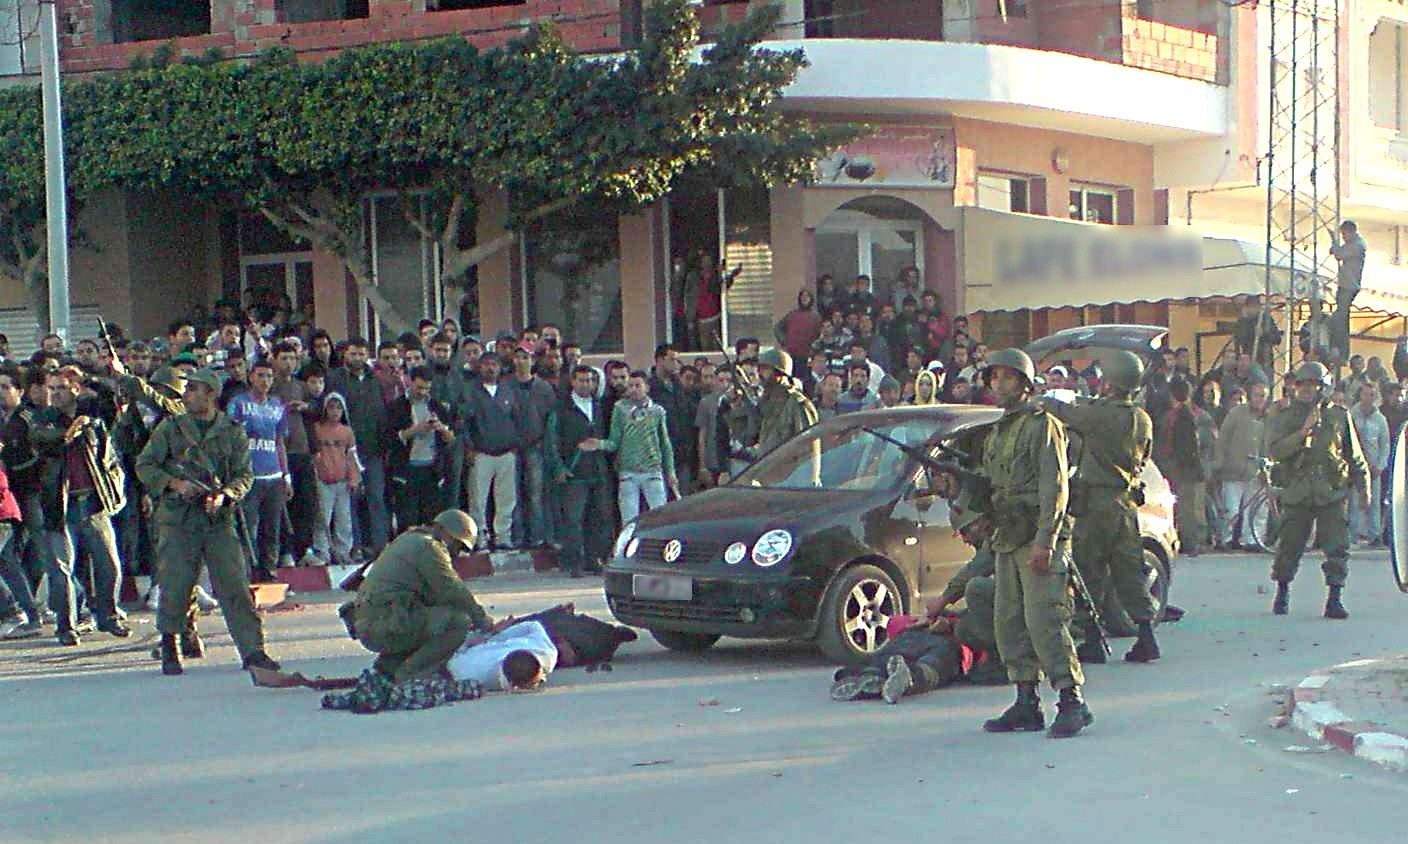 Tunezja jako jedyny kraj "arabskiej wiosny" ma wciąż szanse na zbudowanie struktur demokratycznych. Na zdjęciu tunezyjscy żołnierze zatrzymują samochód z uwagi na podejrzenie przewożenia broni w 2011 roku. Fot. Habib M’henni/Wikimedia Commons CC-BY SA 3.0.